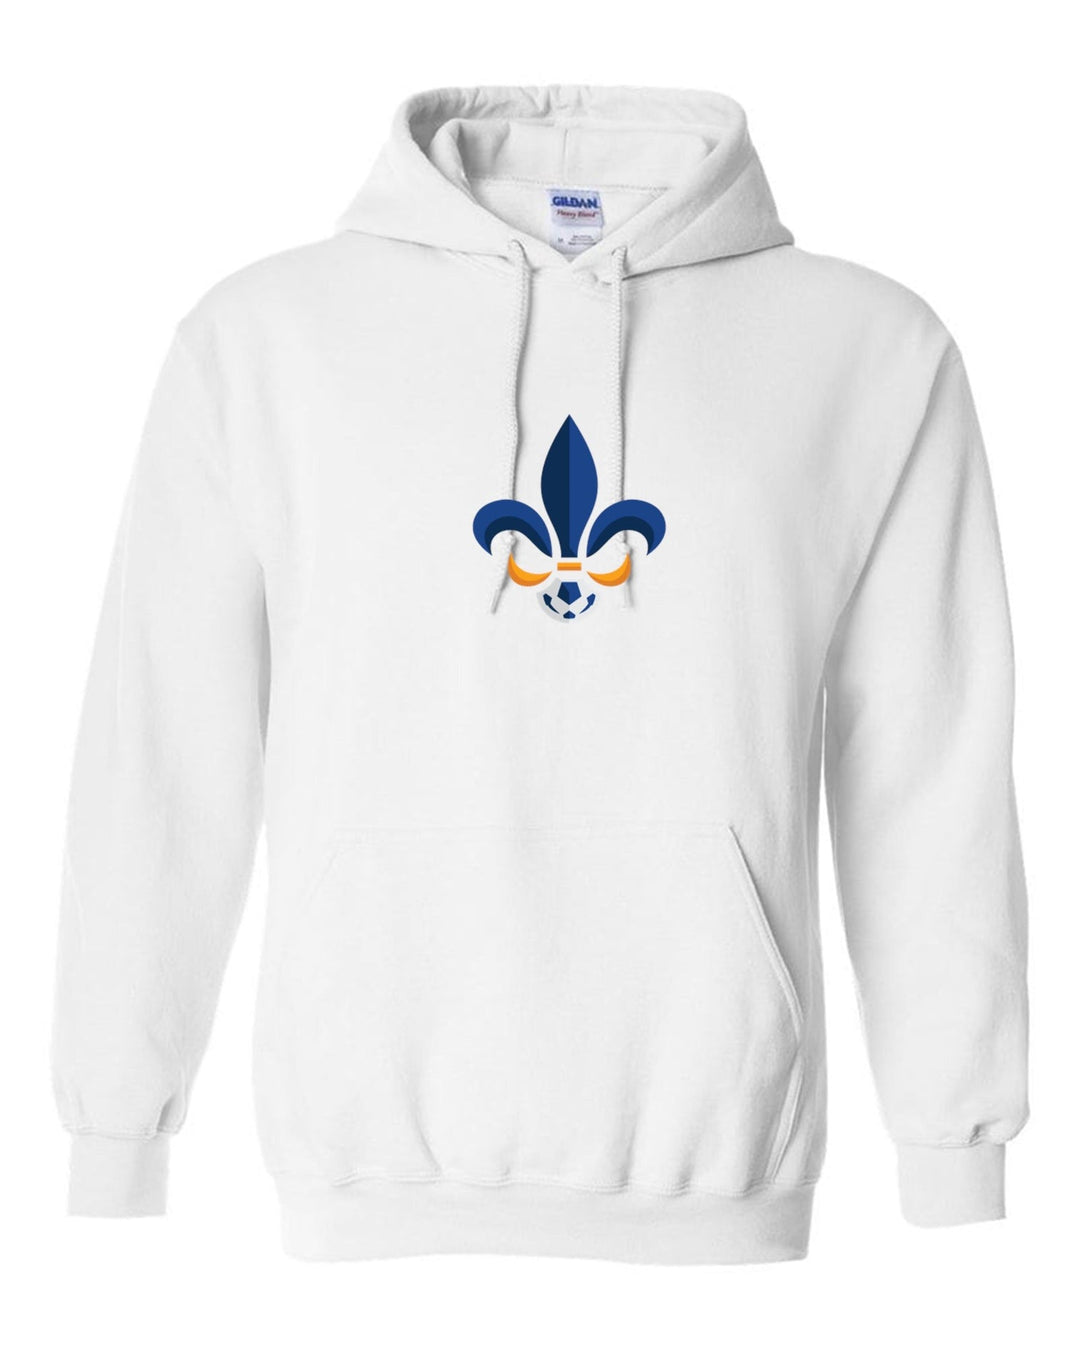 Louisiana Select Logo Hoody LA ODP Spiritwear White Youth Small - Third Coast Soccer